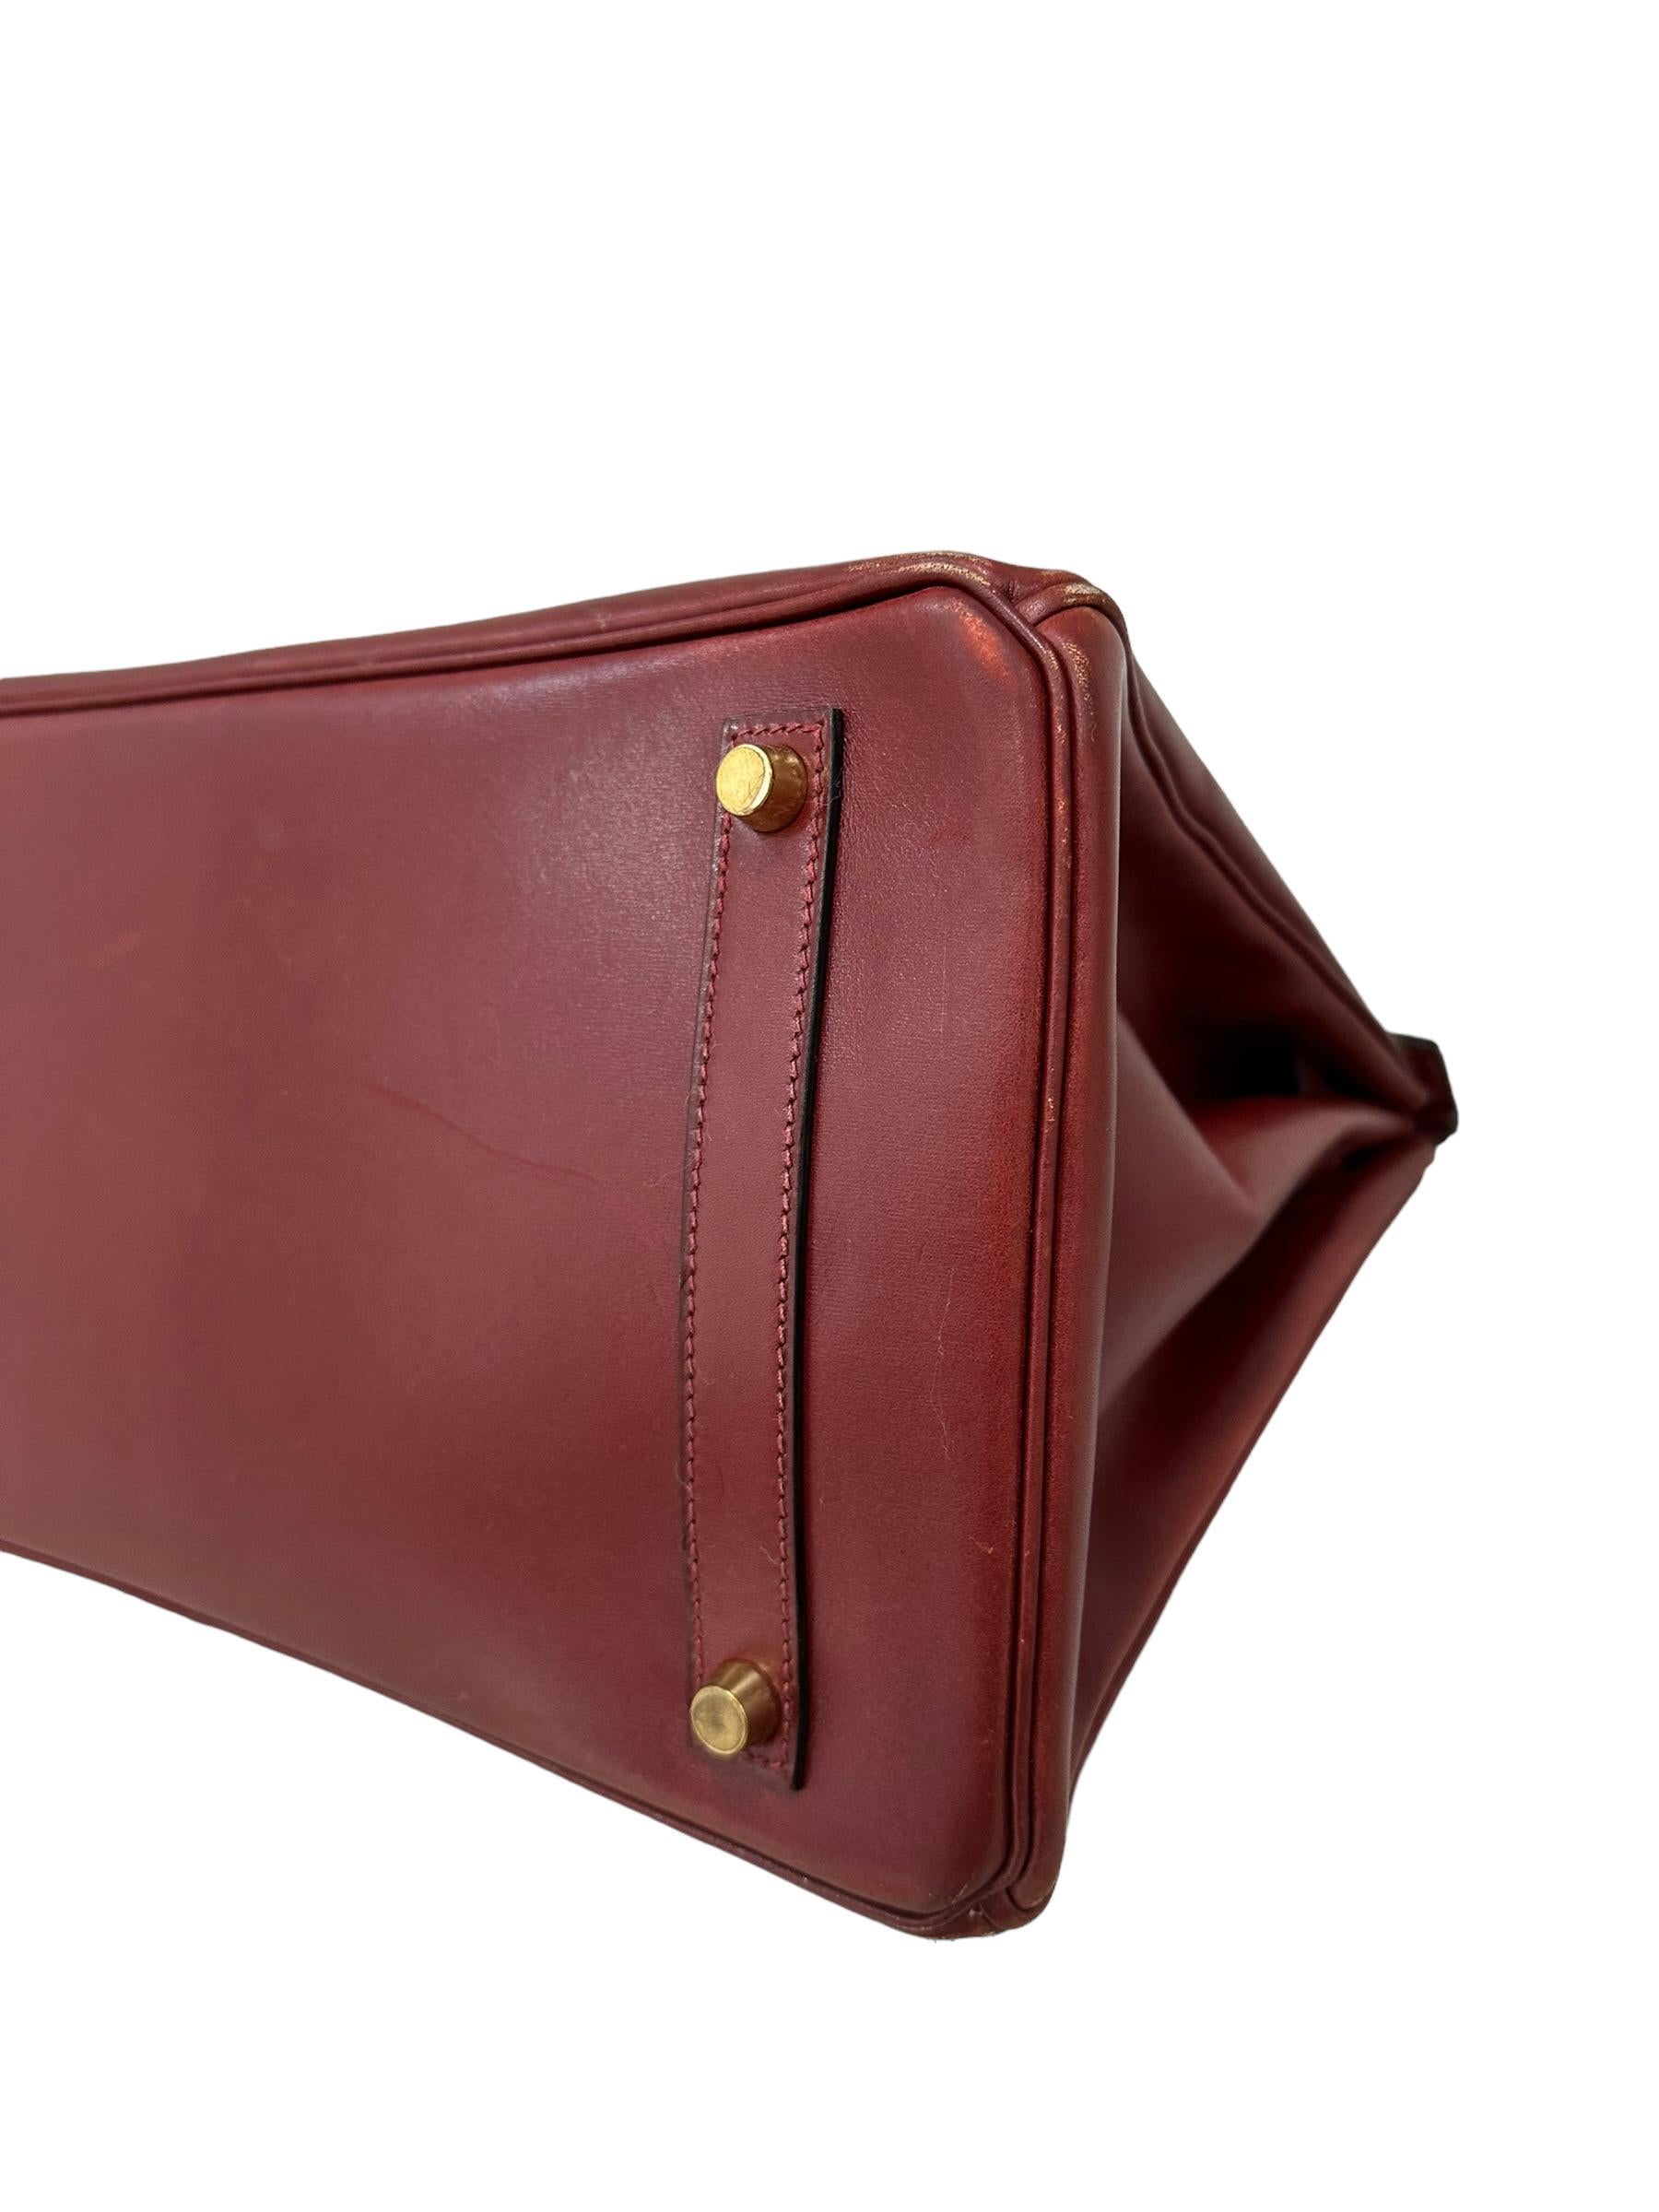 Hermès Birkin 35 Evercalf Rouge Garance Top Handle Bag 9